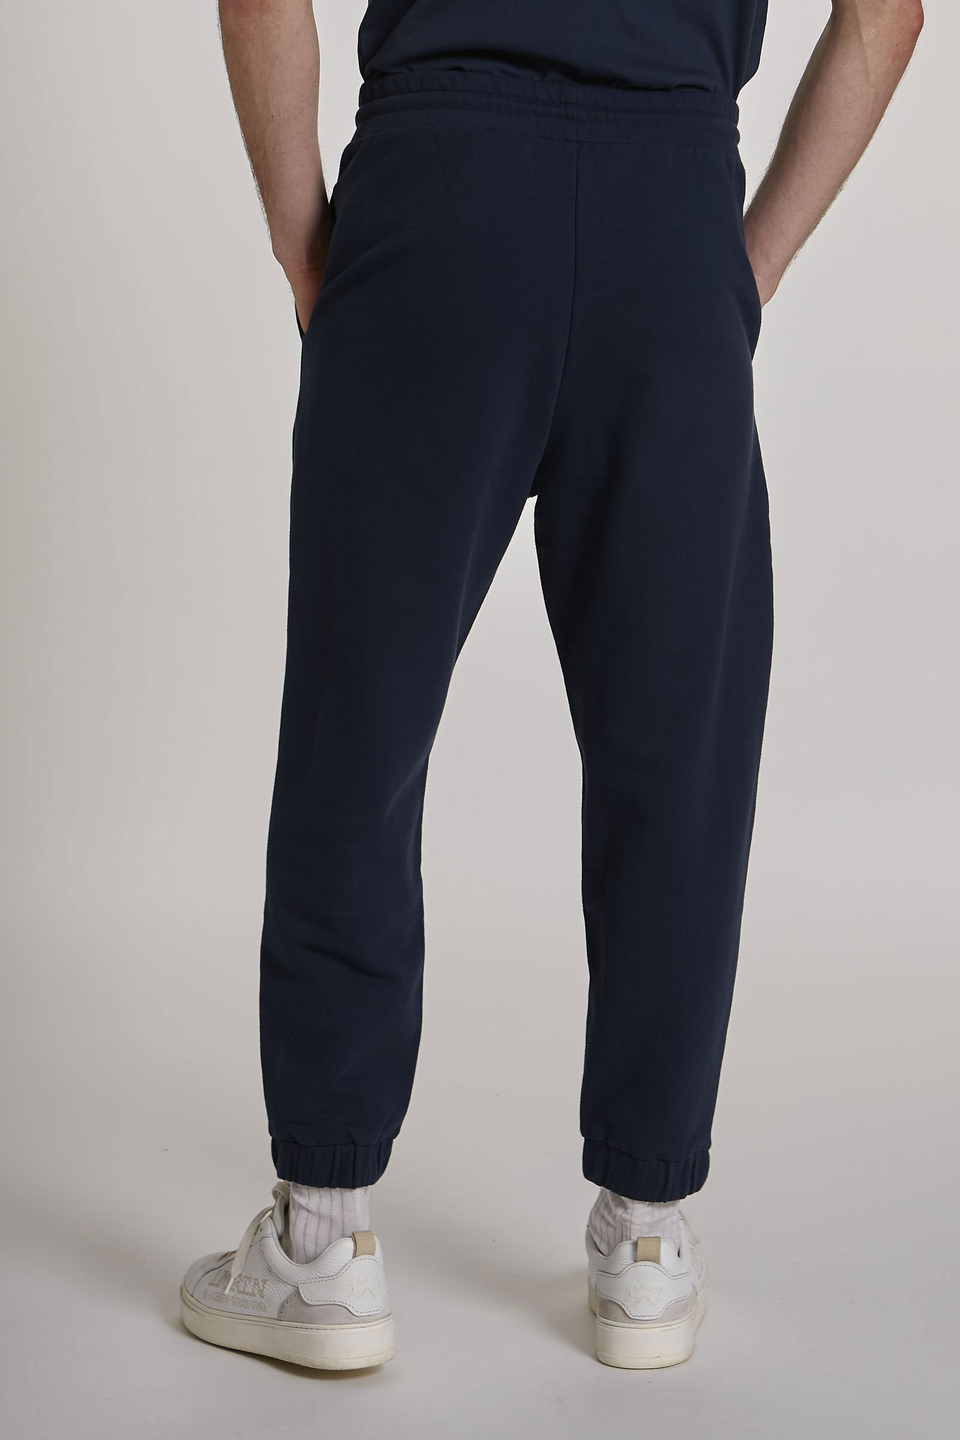 Pantalone da uomo modello jogger in cotone elasticizzato oversize | La Martina - Official Online Shop